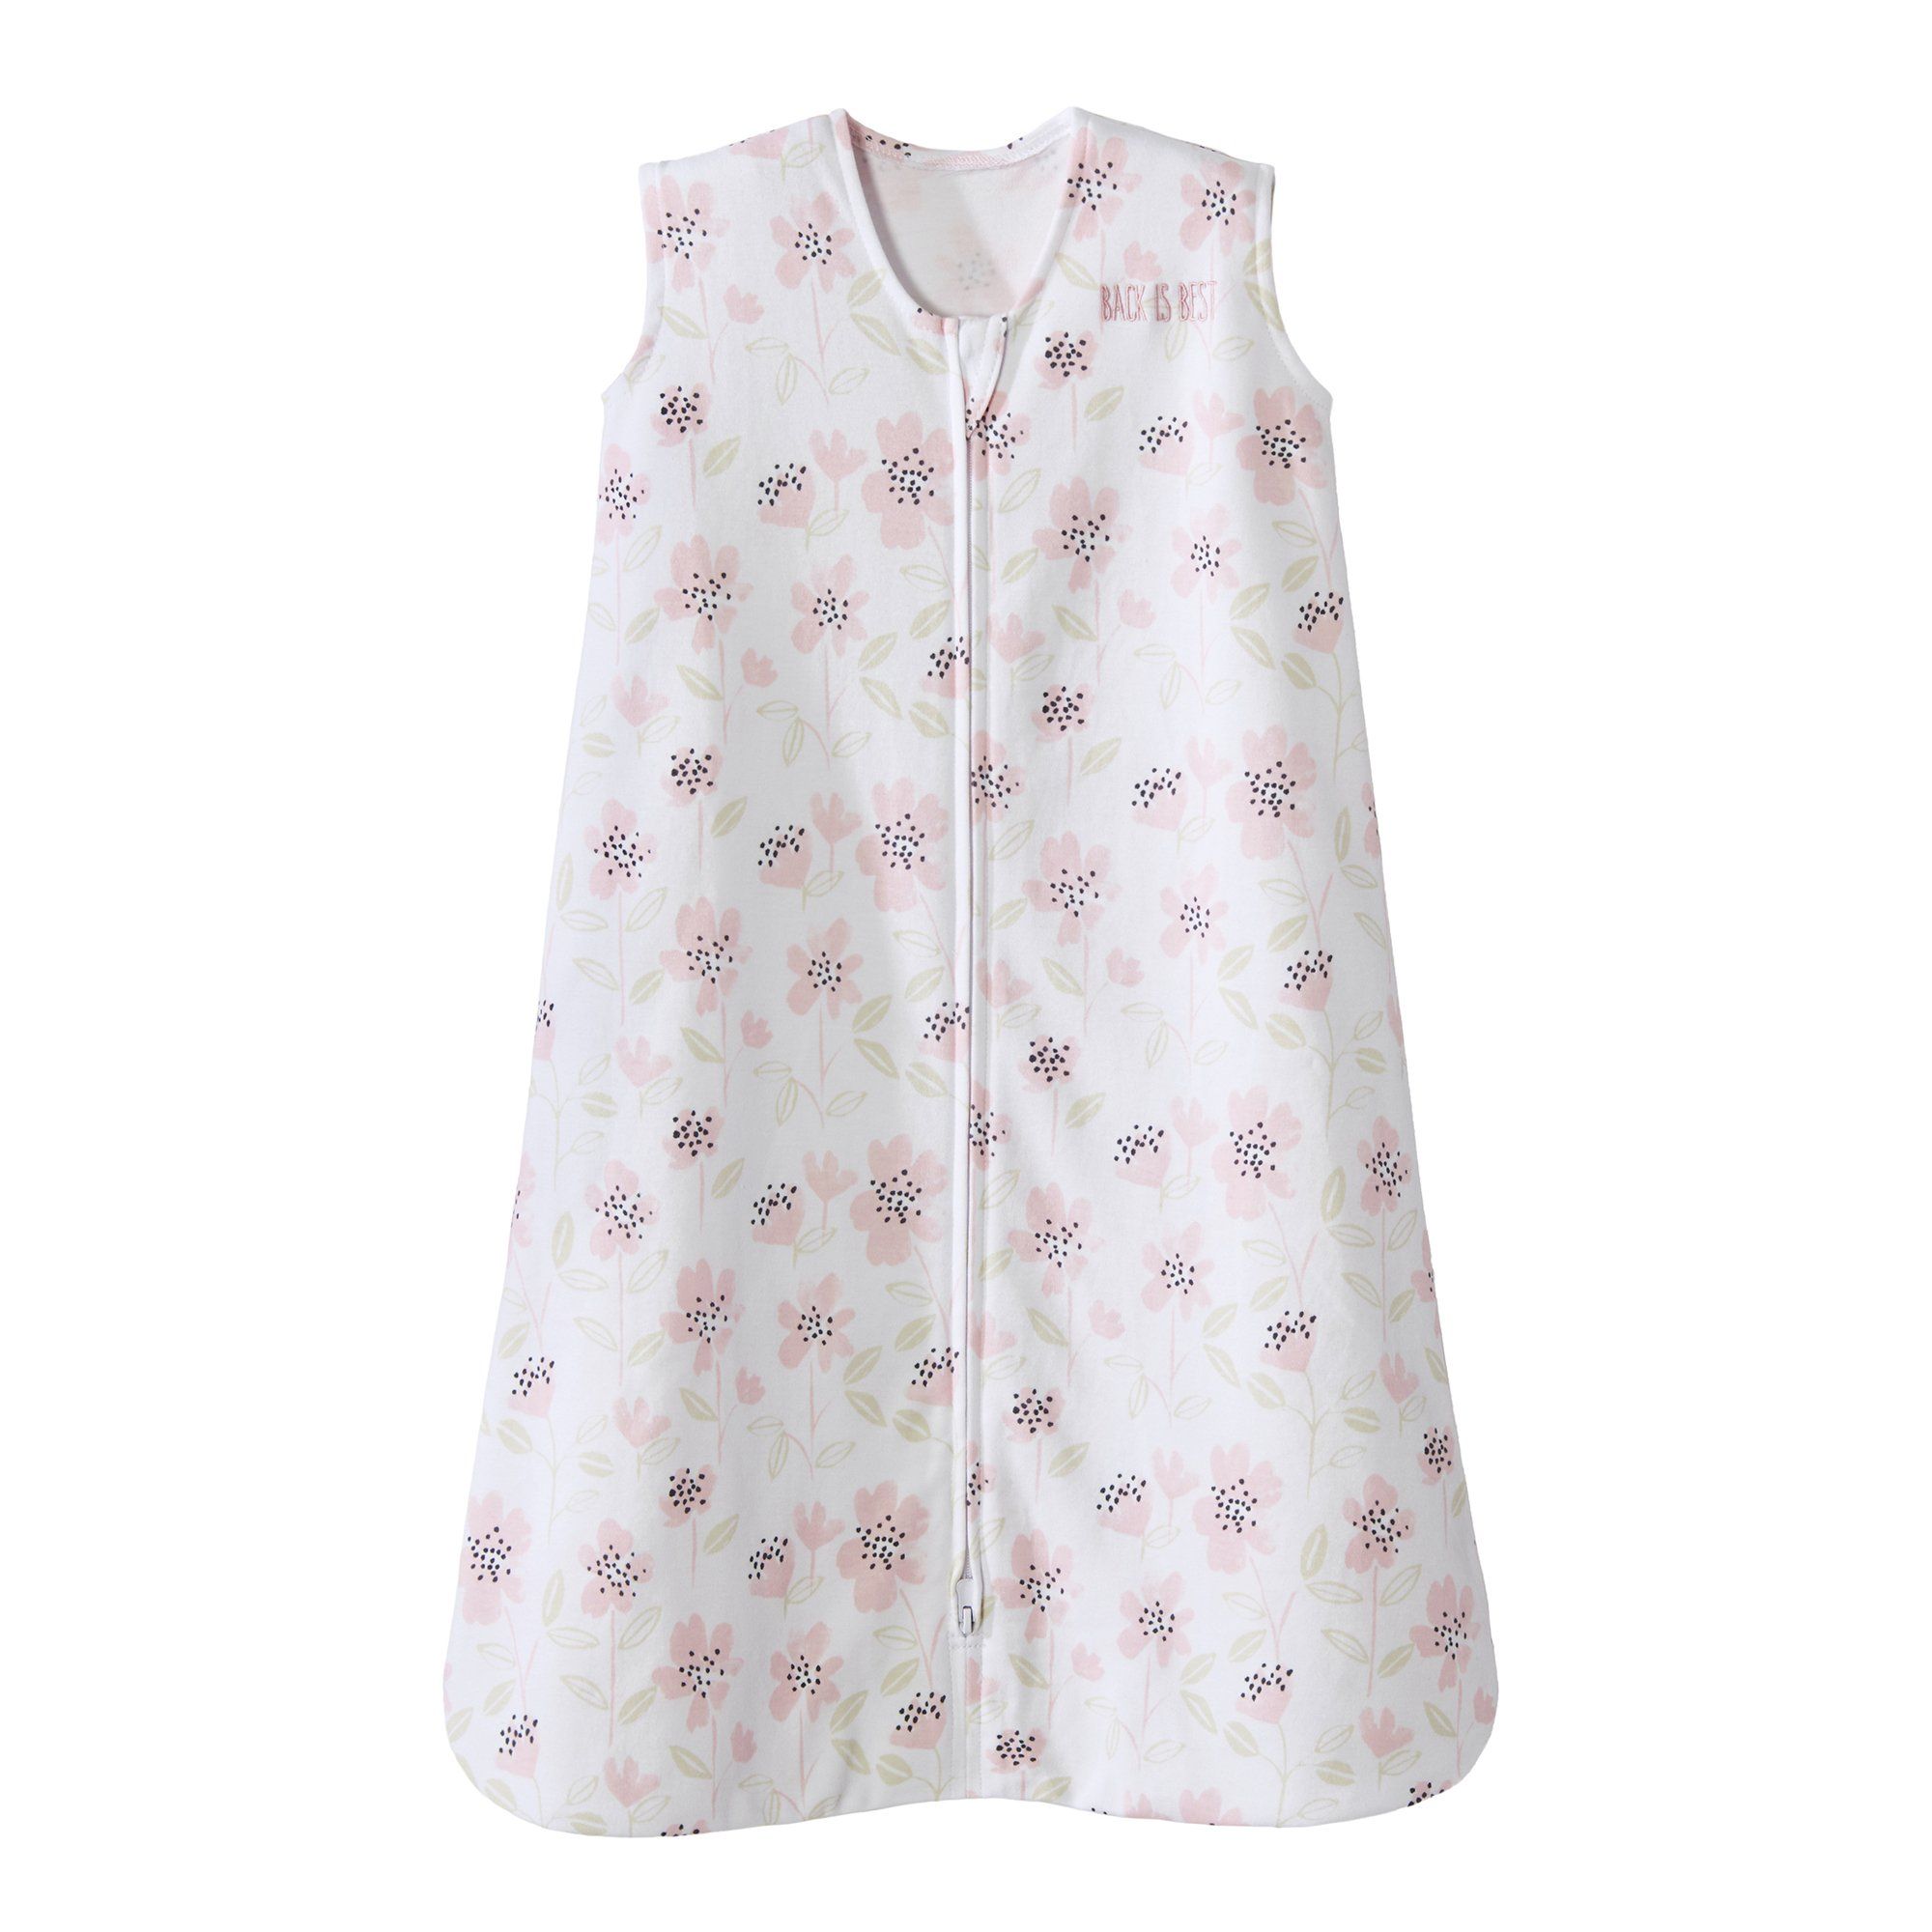 HALO Wearable Blanket, Blush Wildflower, Medium (6 to 12 Months) - 1 ct